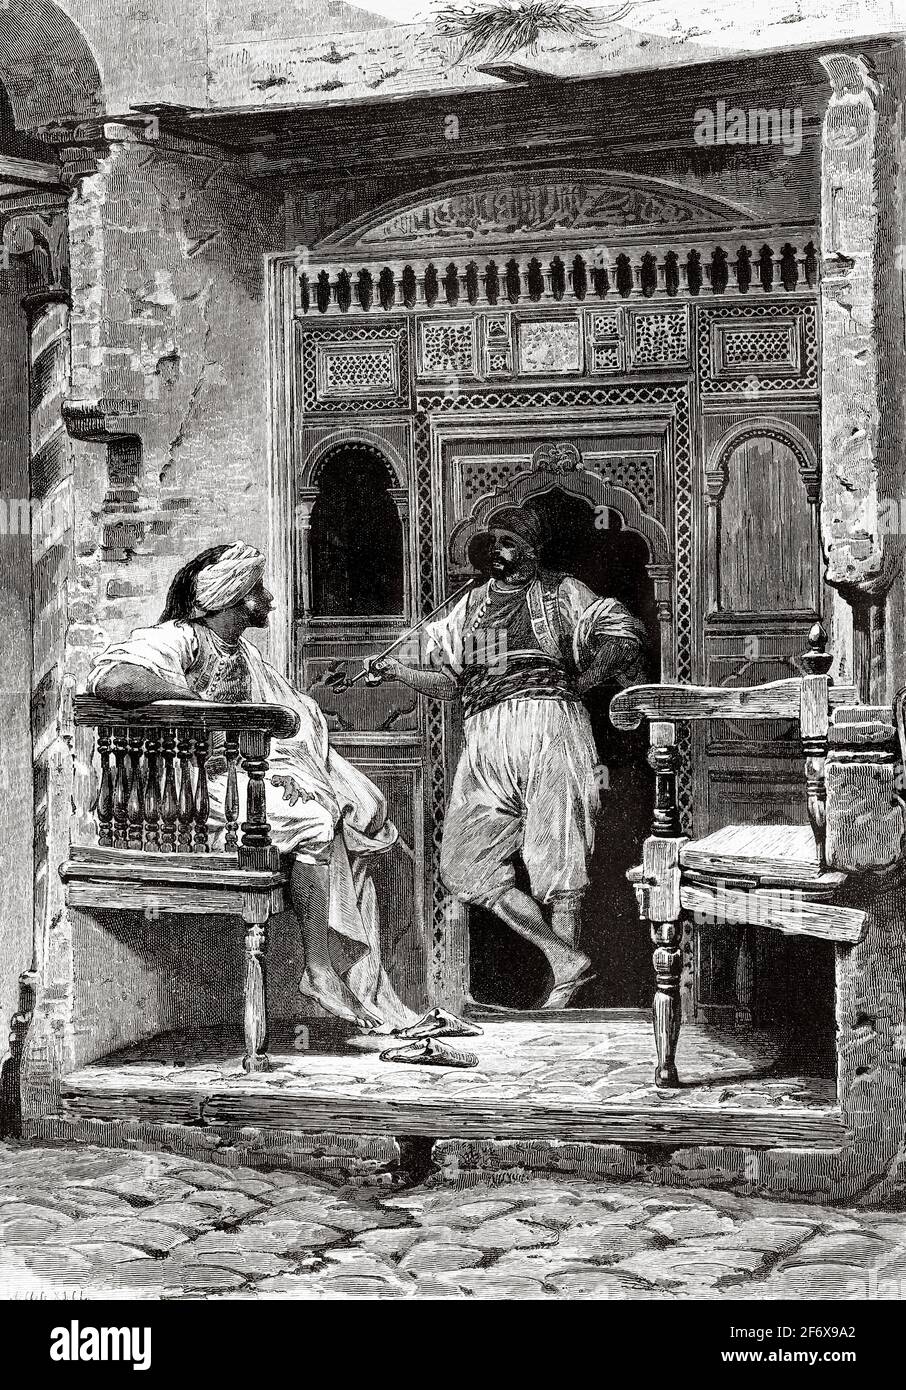 Salon de coiffure tunisien, Tunis. Nord de l'Afrique. Ancienne illustration gravée du XIXe siècle d'El Mundo Ilustrado 1879 Banque D'Images